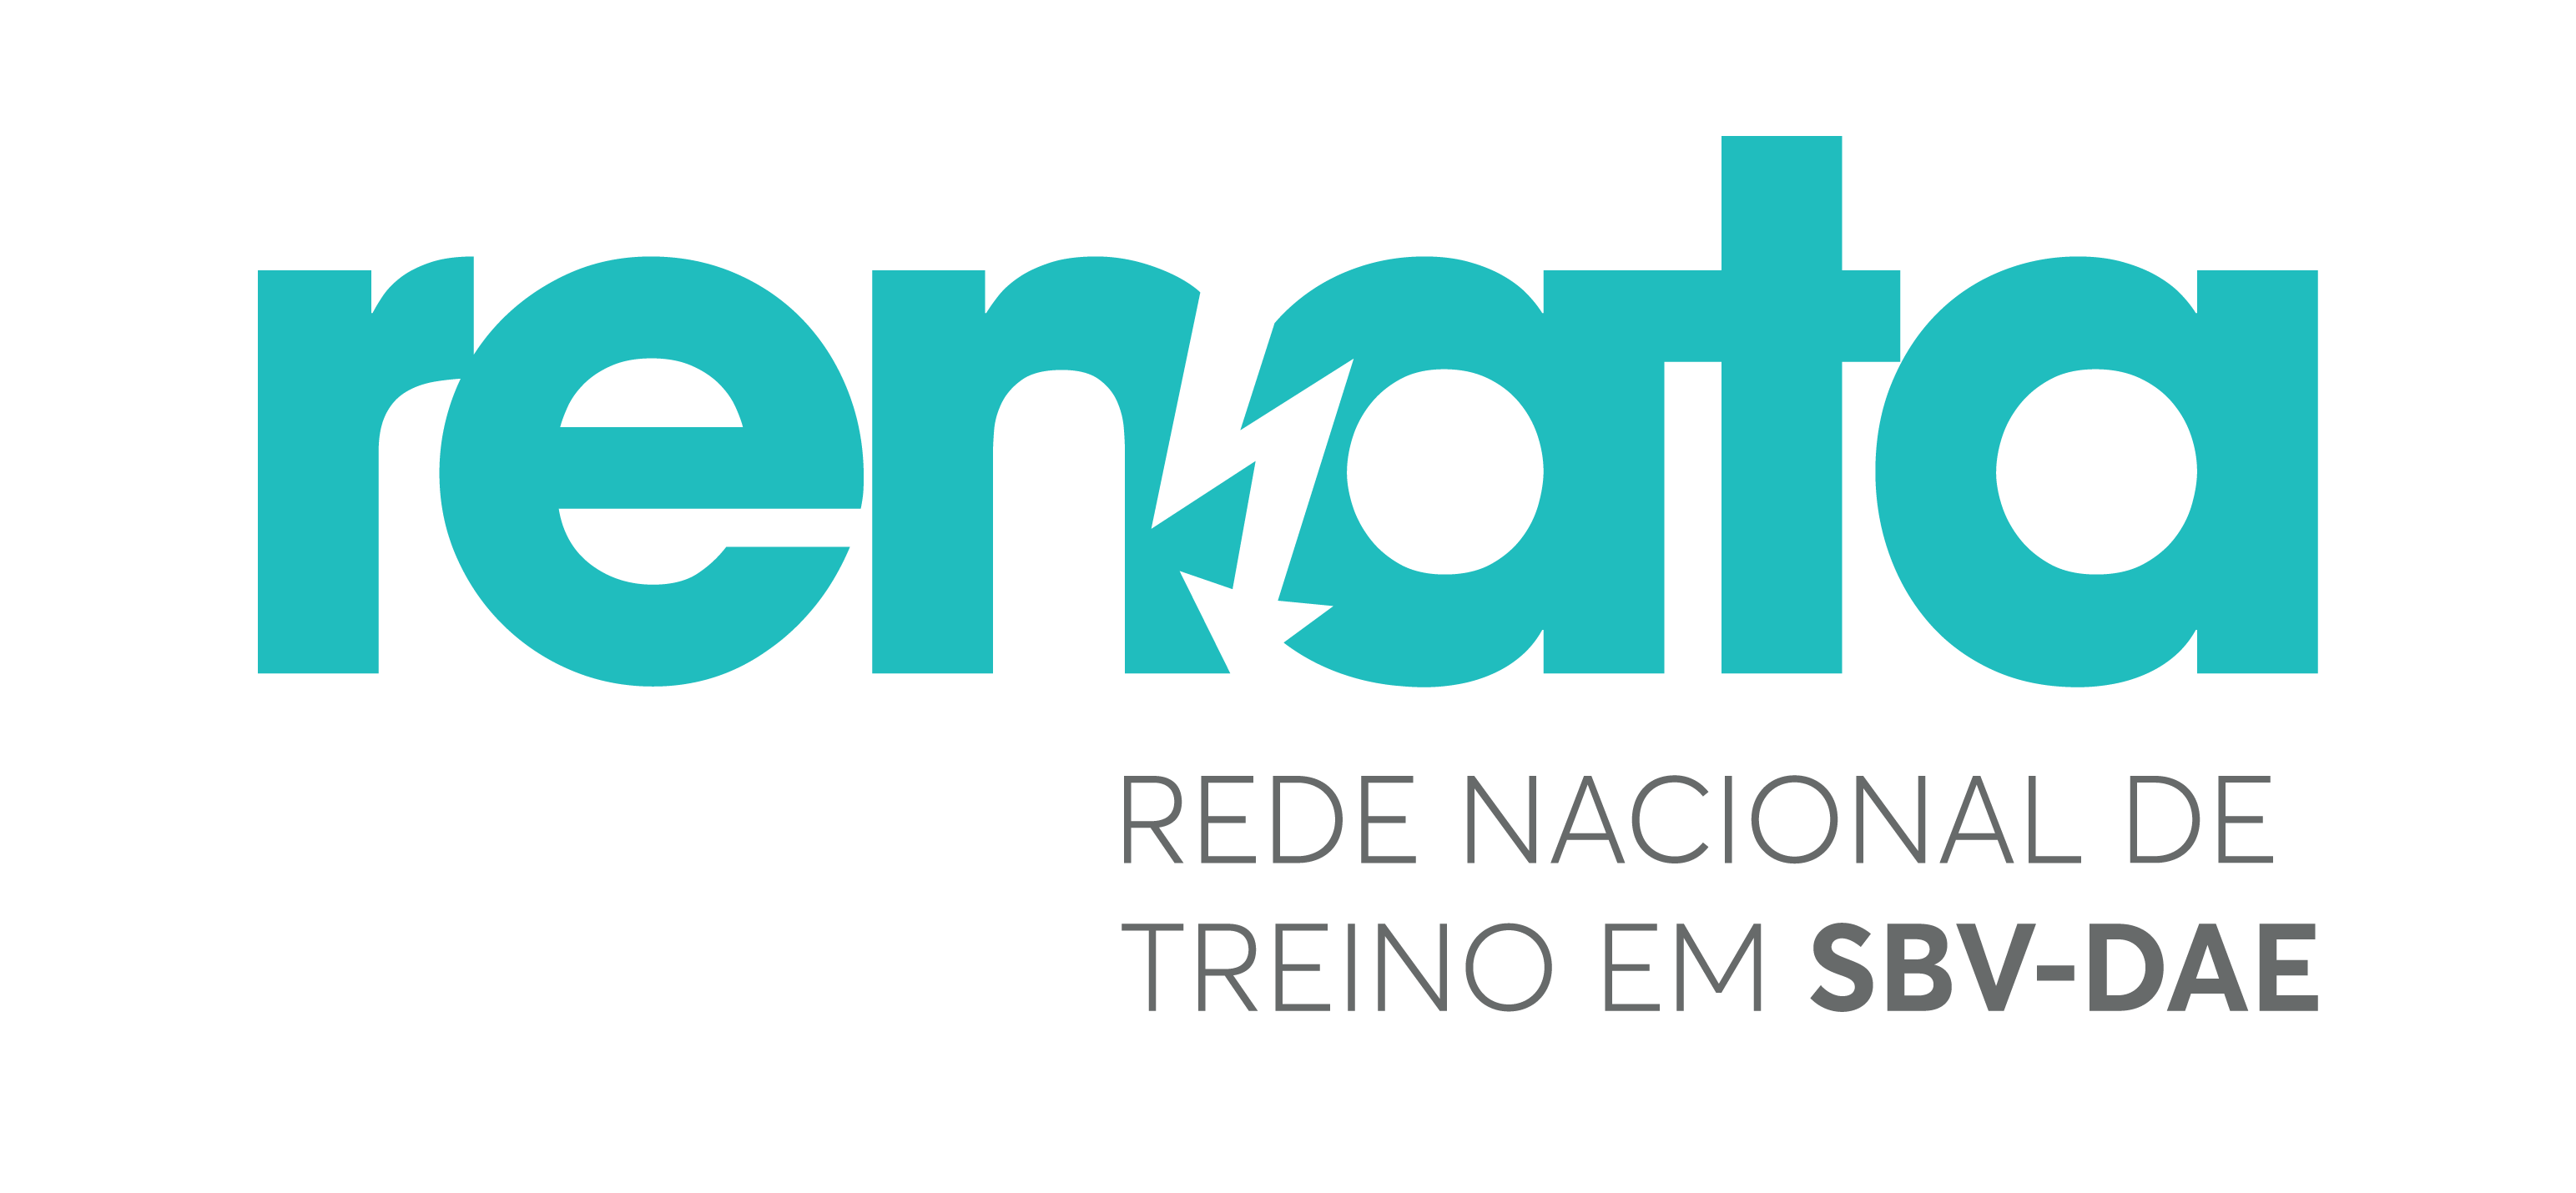 RENATA - Rede Nacional de Treino em SBV-DAE